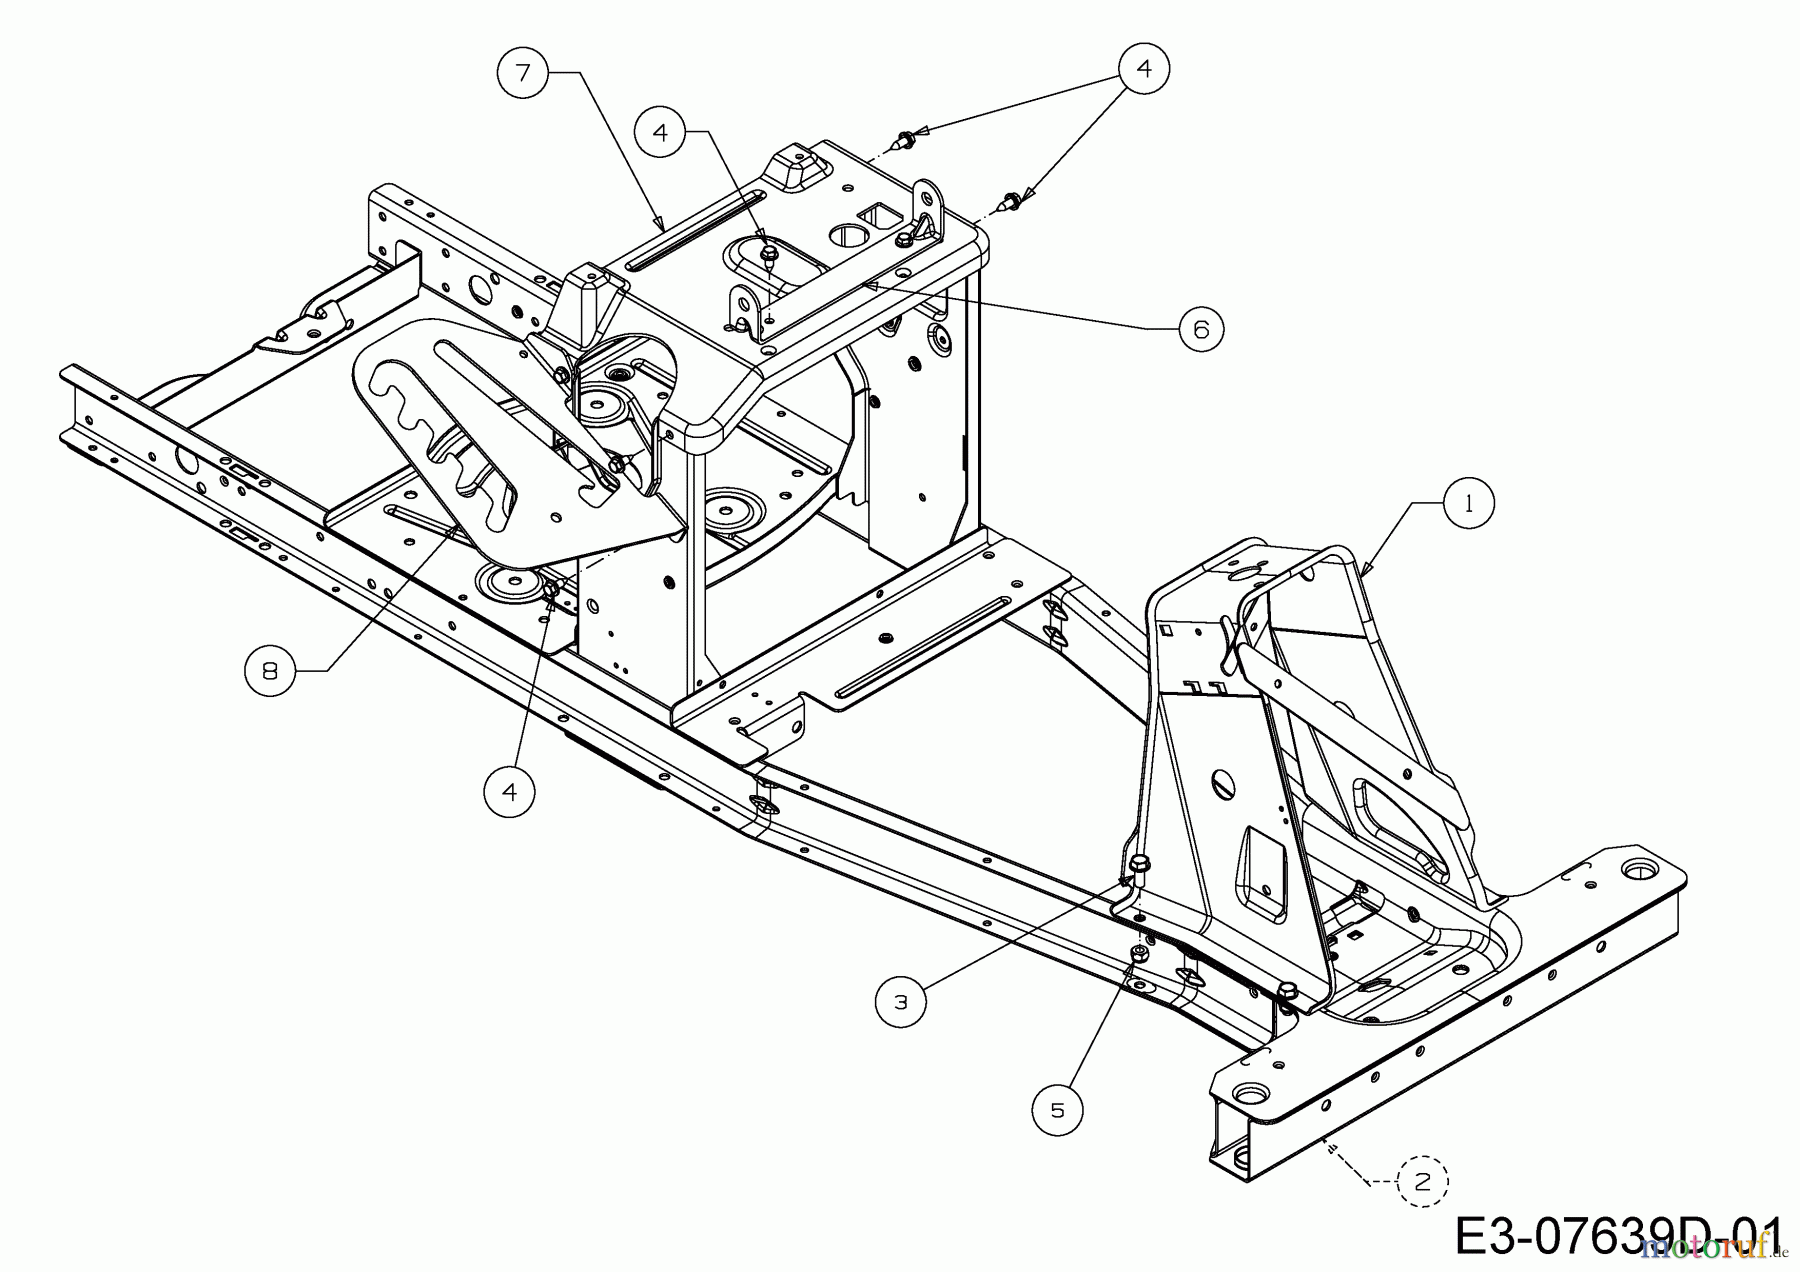  WOLF-Garten Expert Rasentraktoren Scooter Pro 13B226HD650  (2015) Rahmen